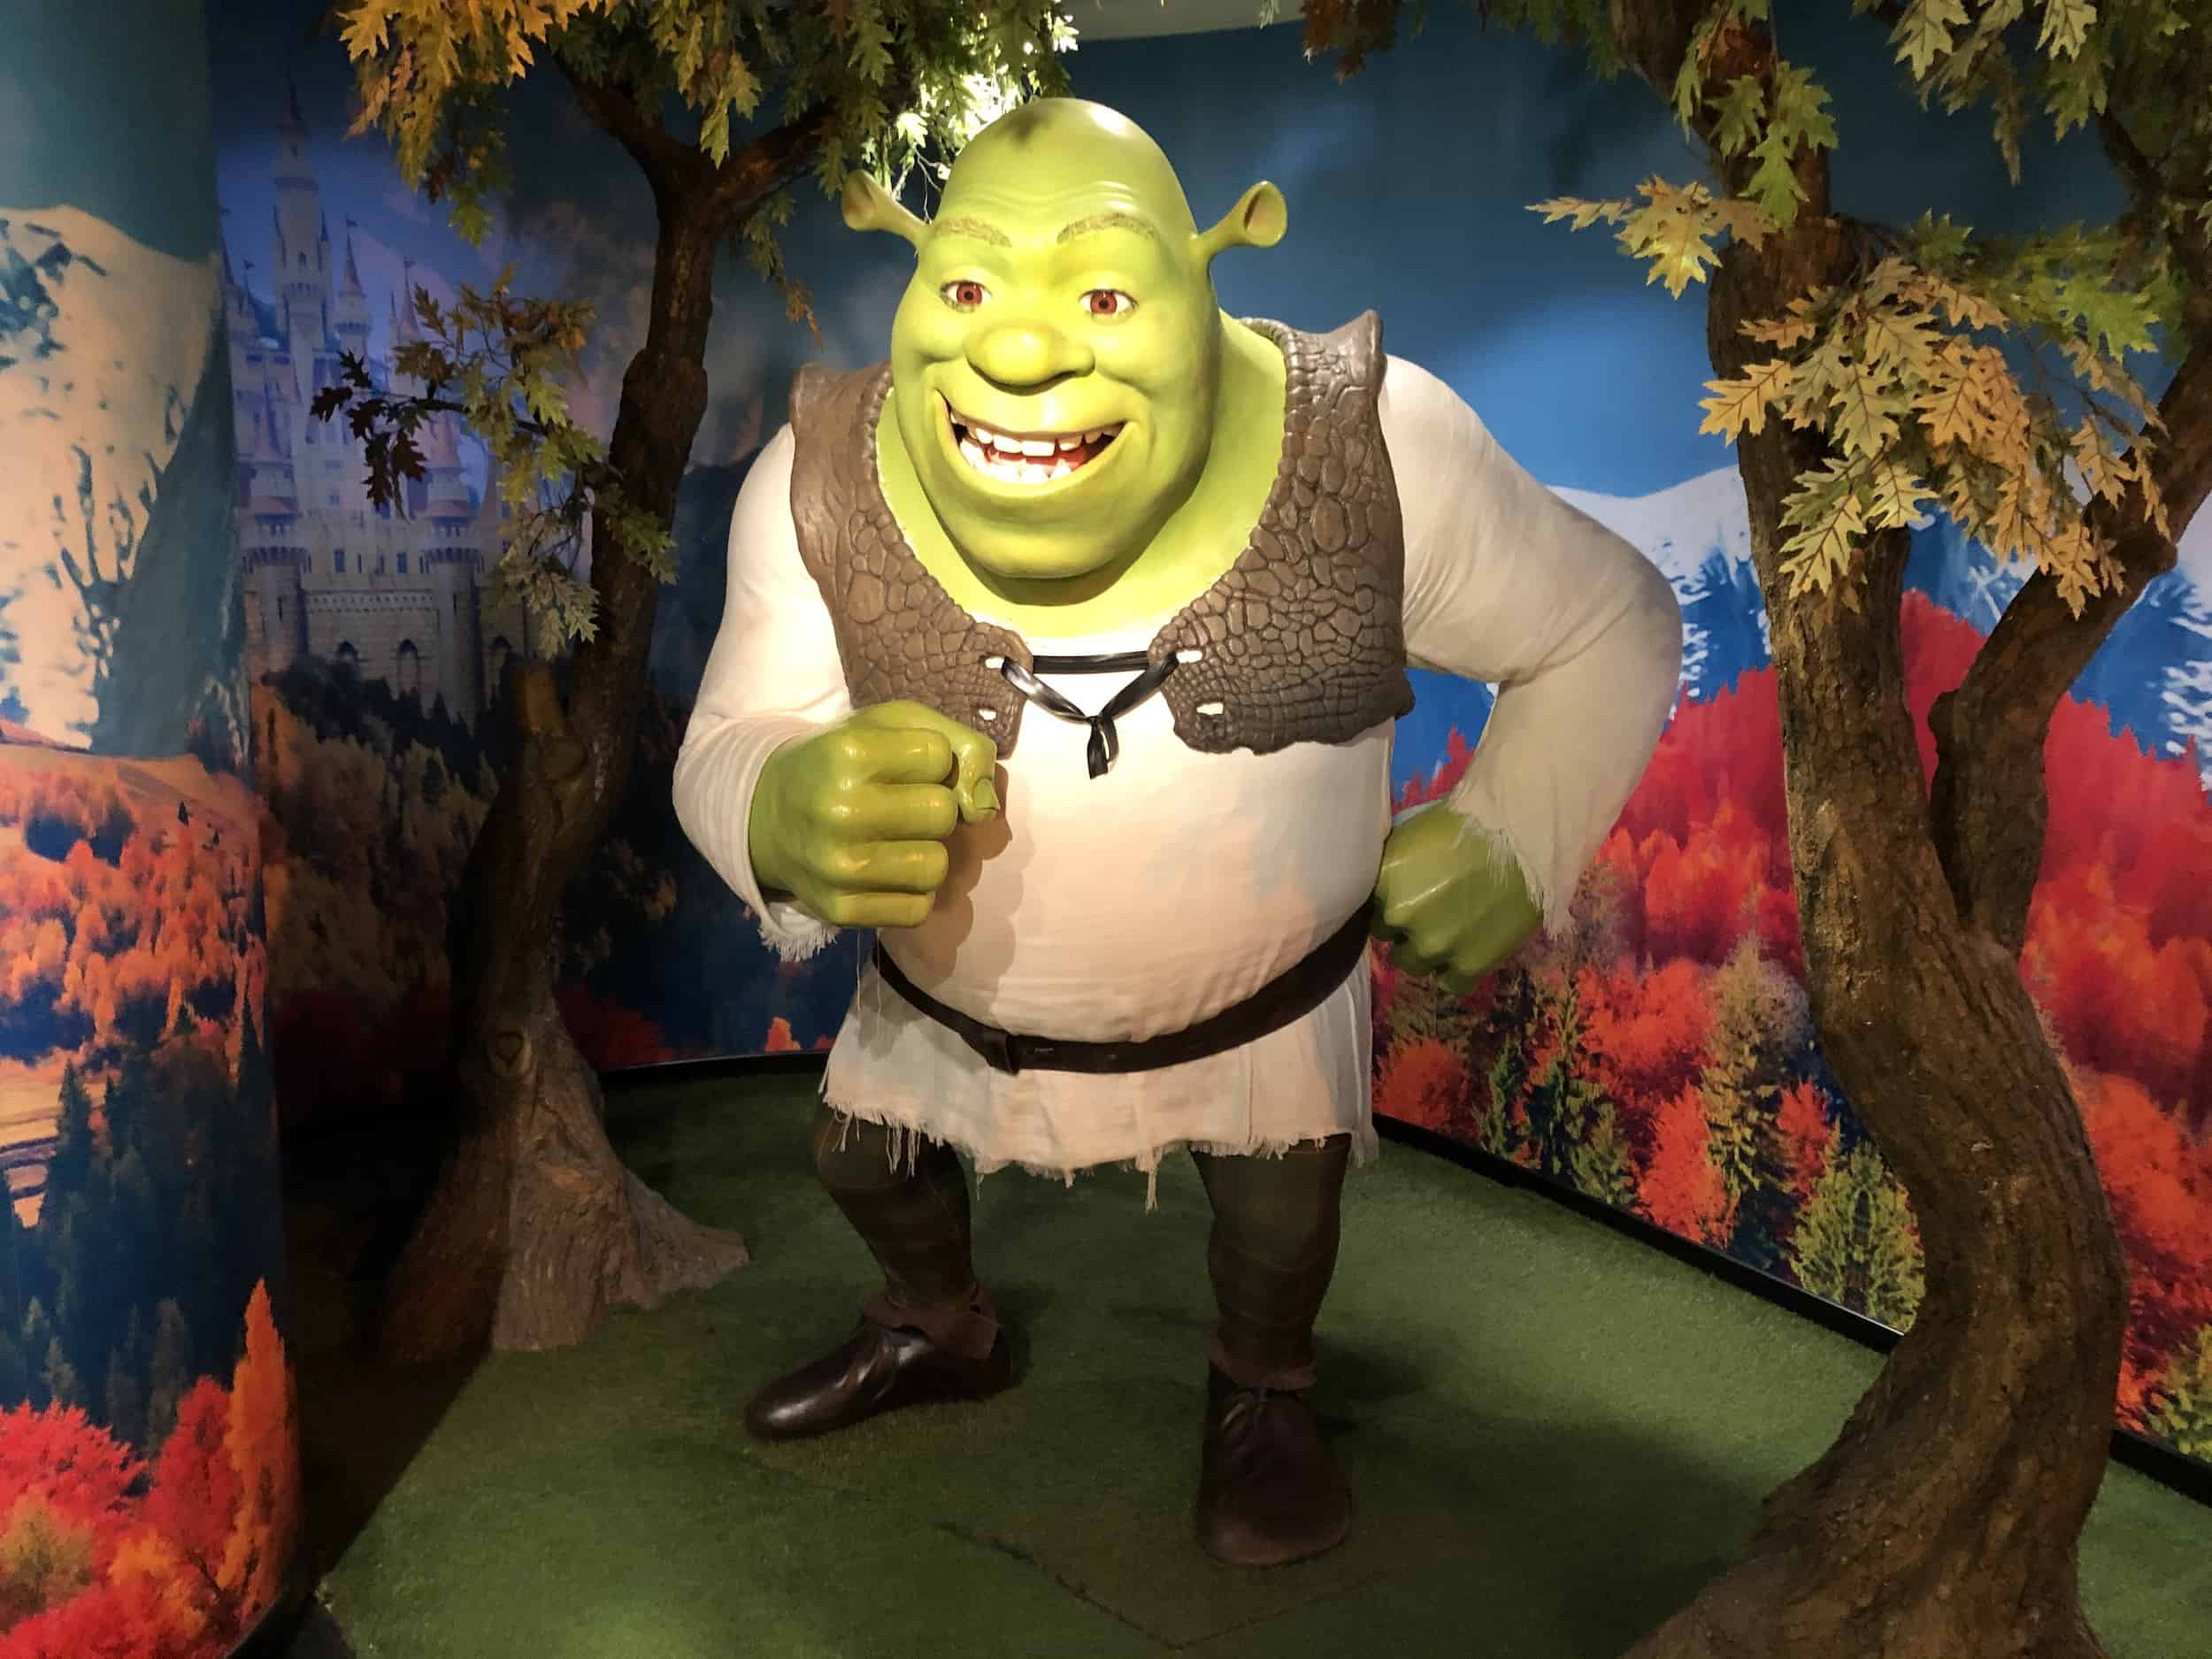 Shrek wax figure